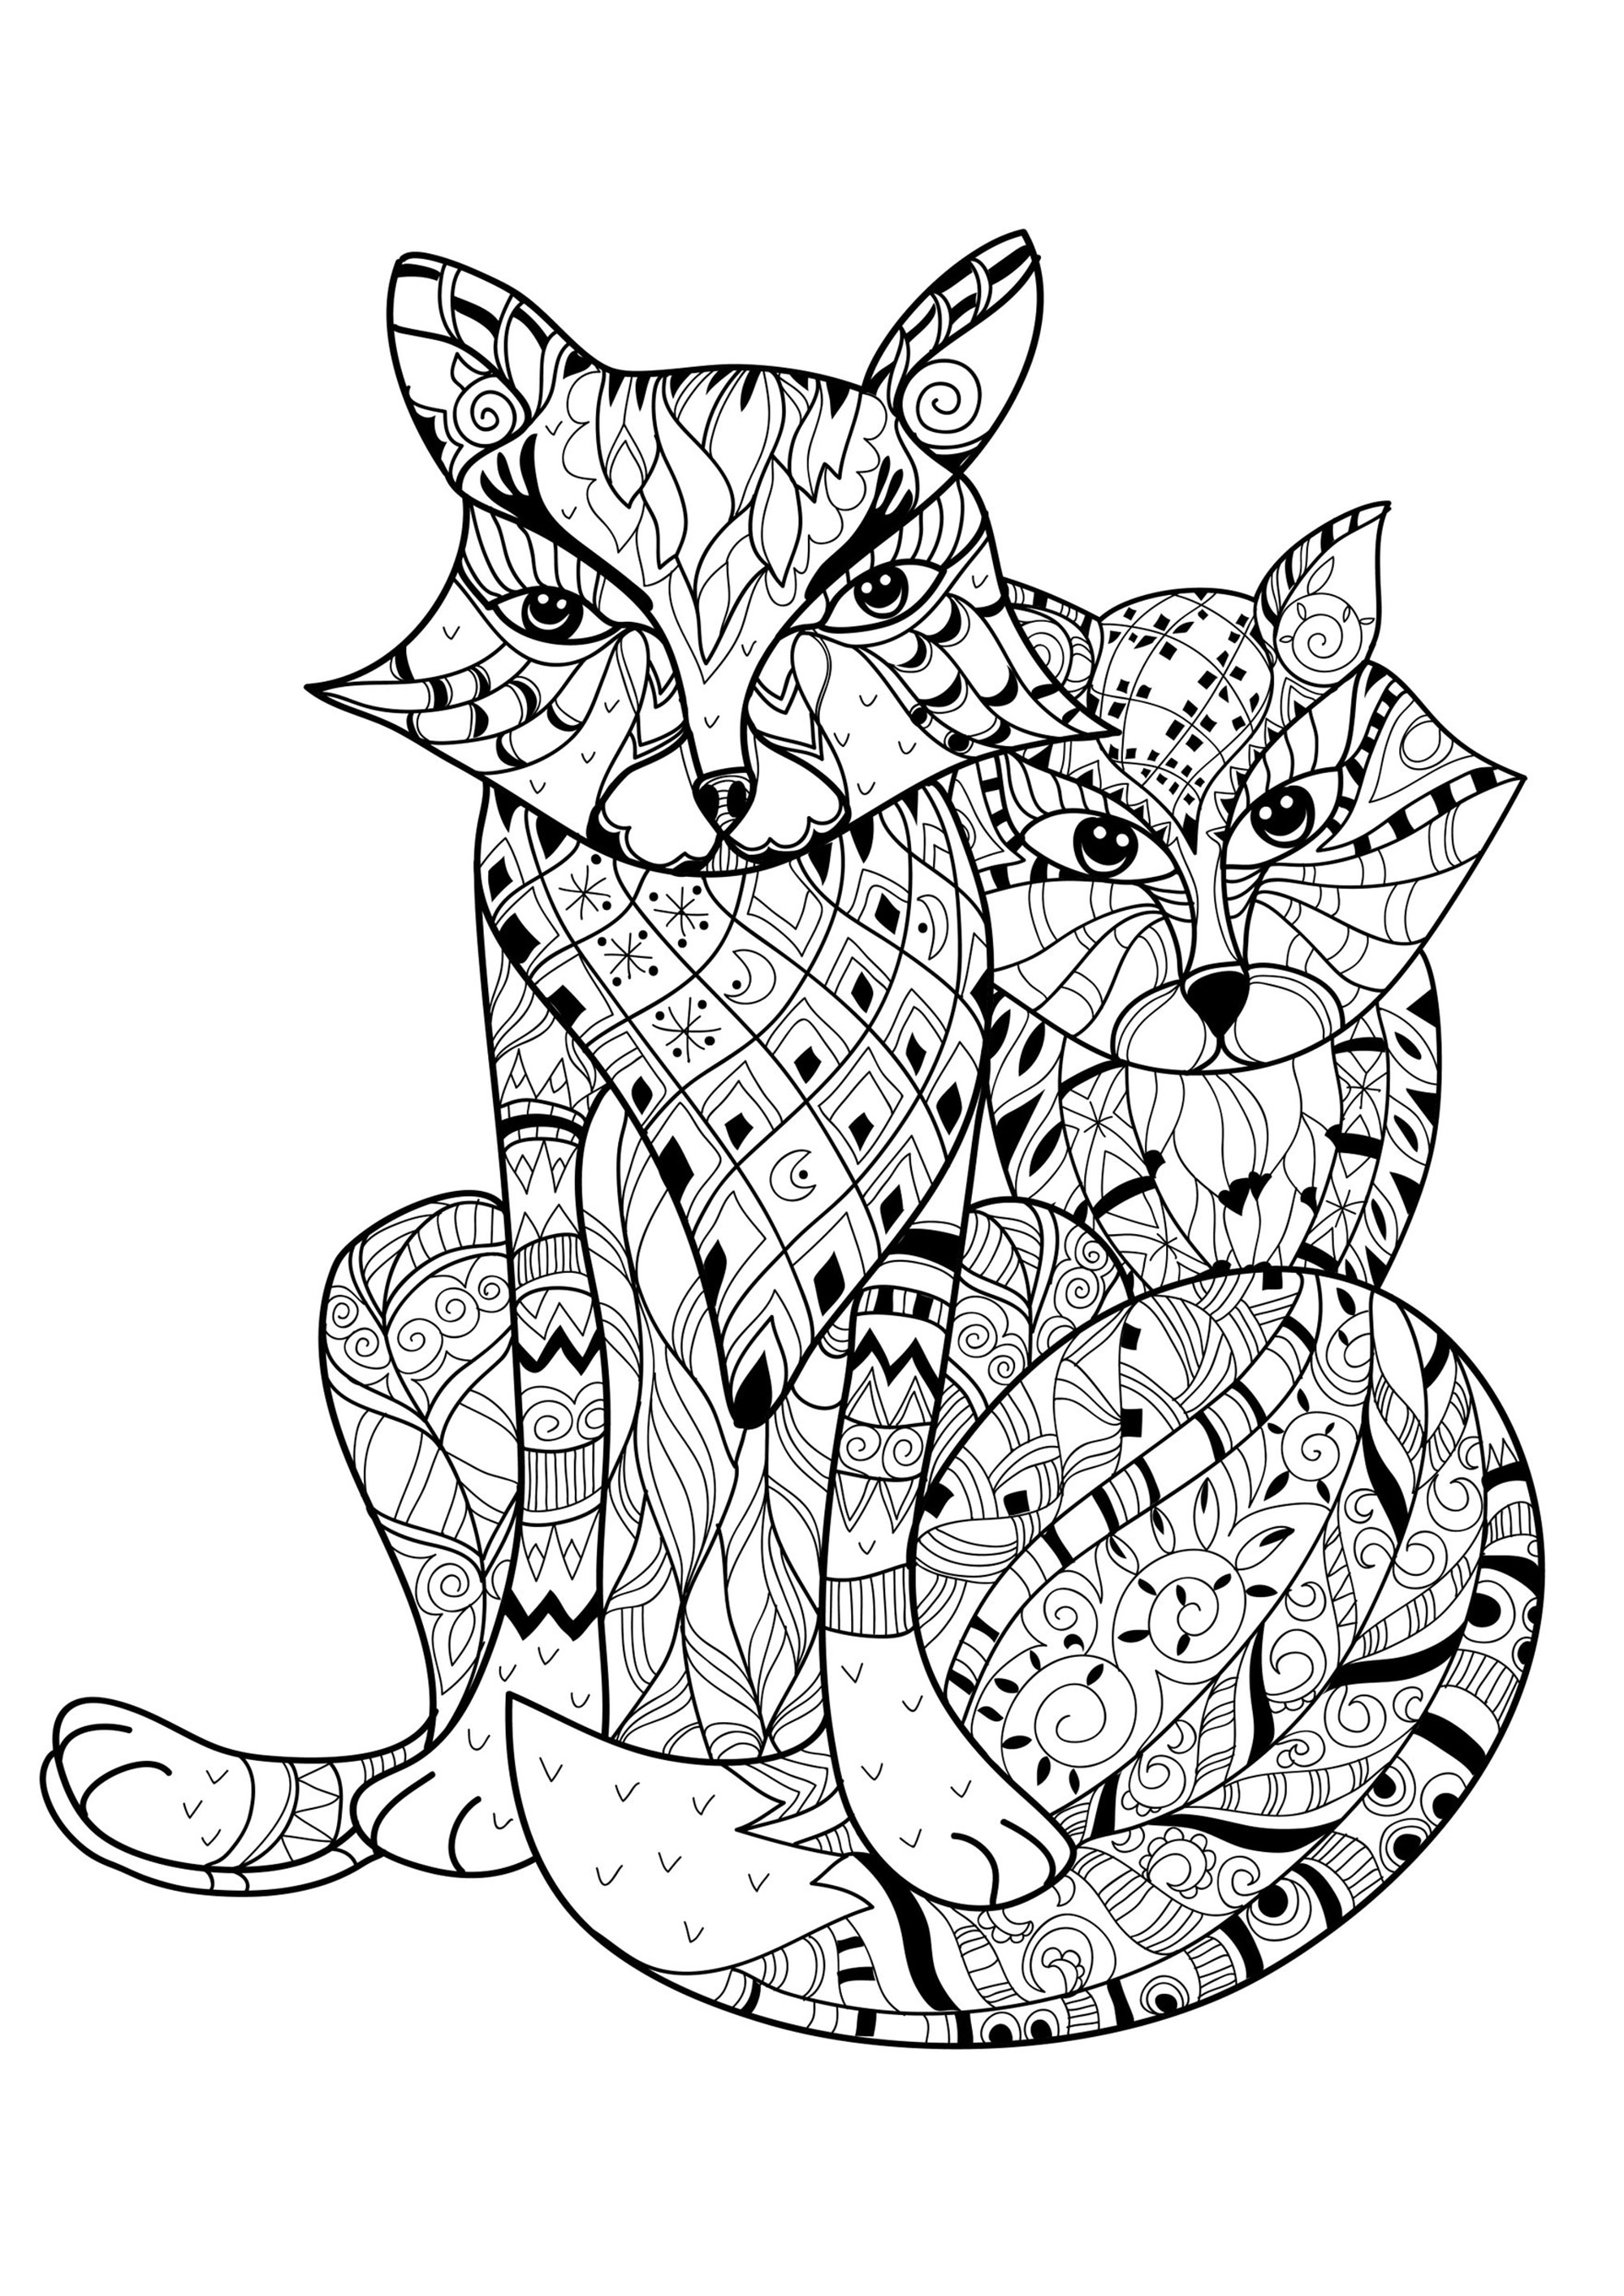 Färbe diese beiden Füchse und ihre unglaublichen Muster, Künstler : Yazzik   Quelle : 123rf